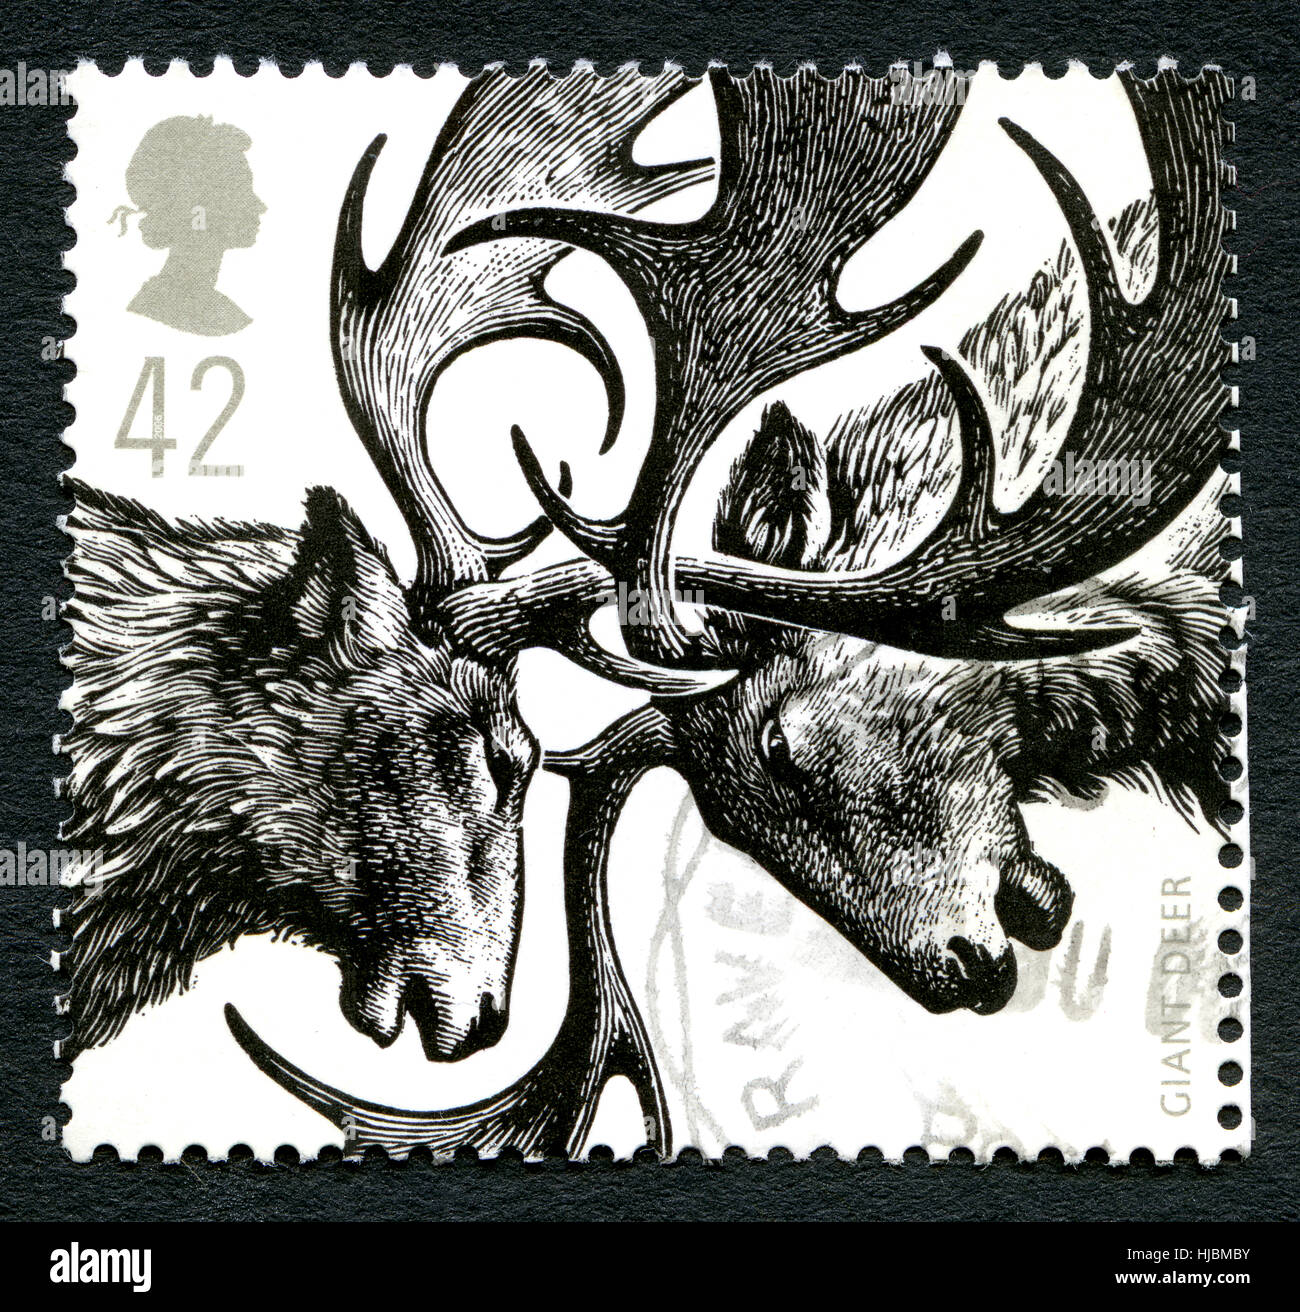 Royaume-uni - circa 2006 : un timbre-poste utilisé par le Royaume-Uni, qui représente une illustration de l'âge de glace géant mammifères Cerf, vers 2006. Banque D'Images